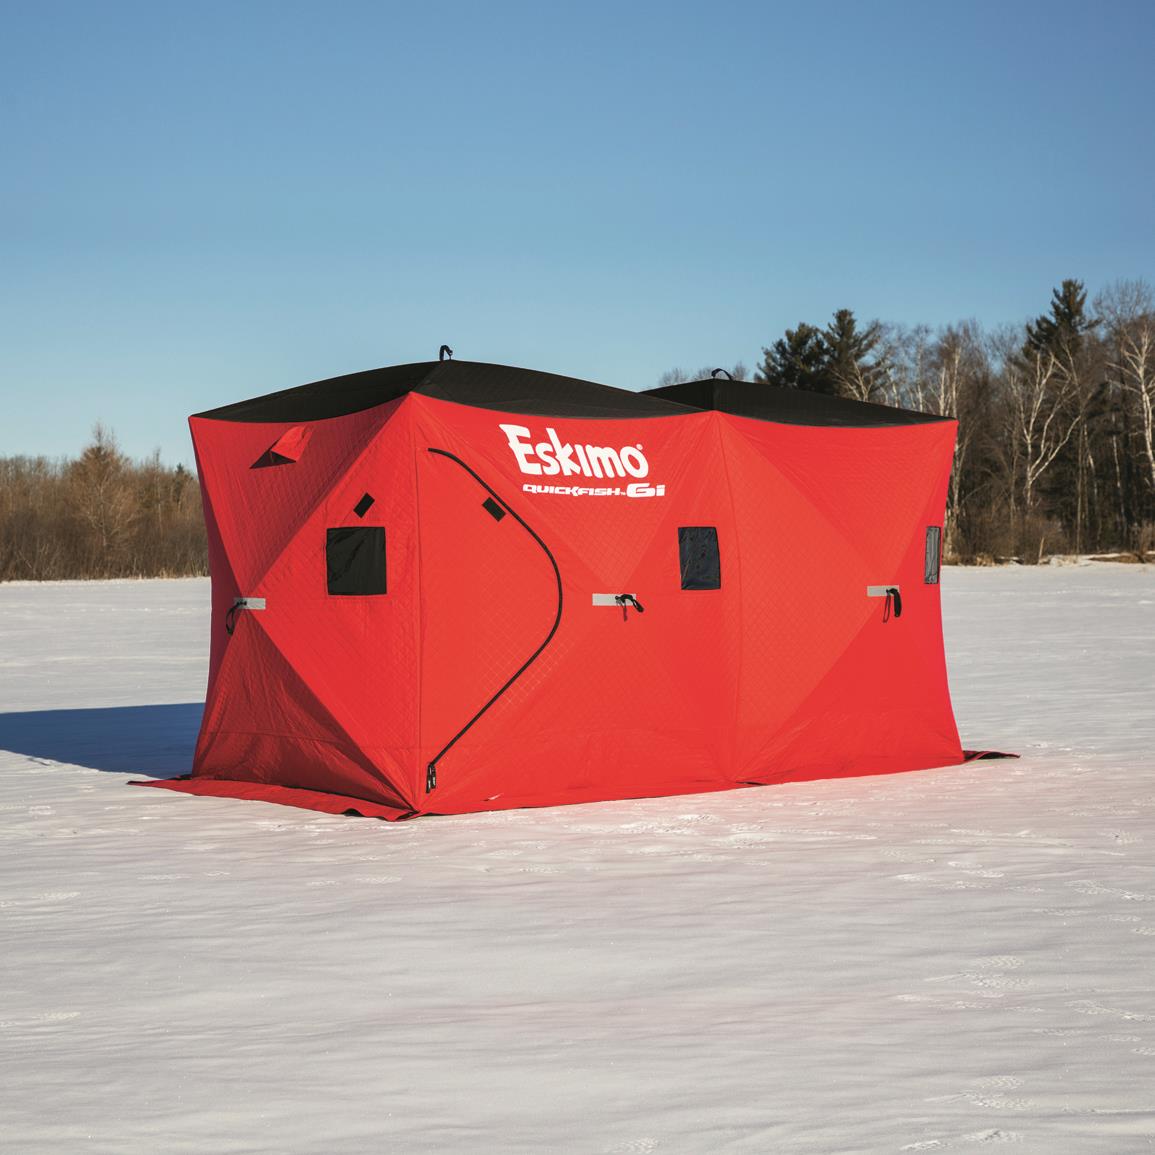 Eskimo QuickFish 6i Insulated Ice Fishing Shelter, 6